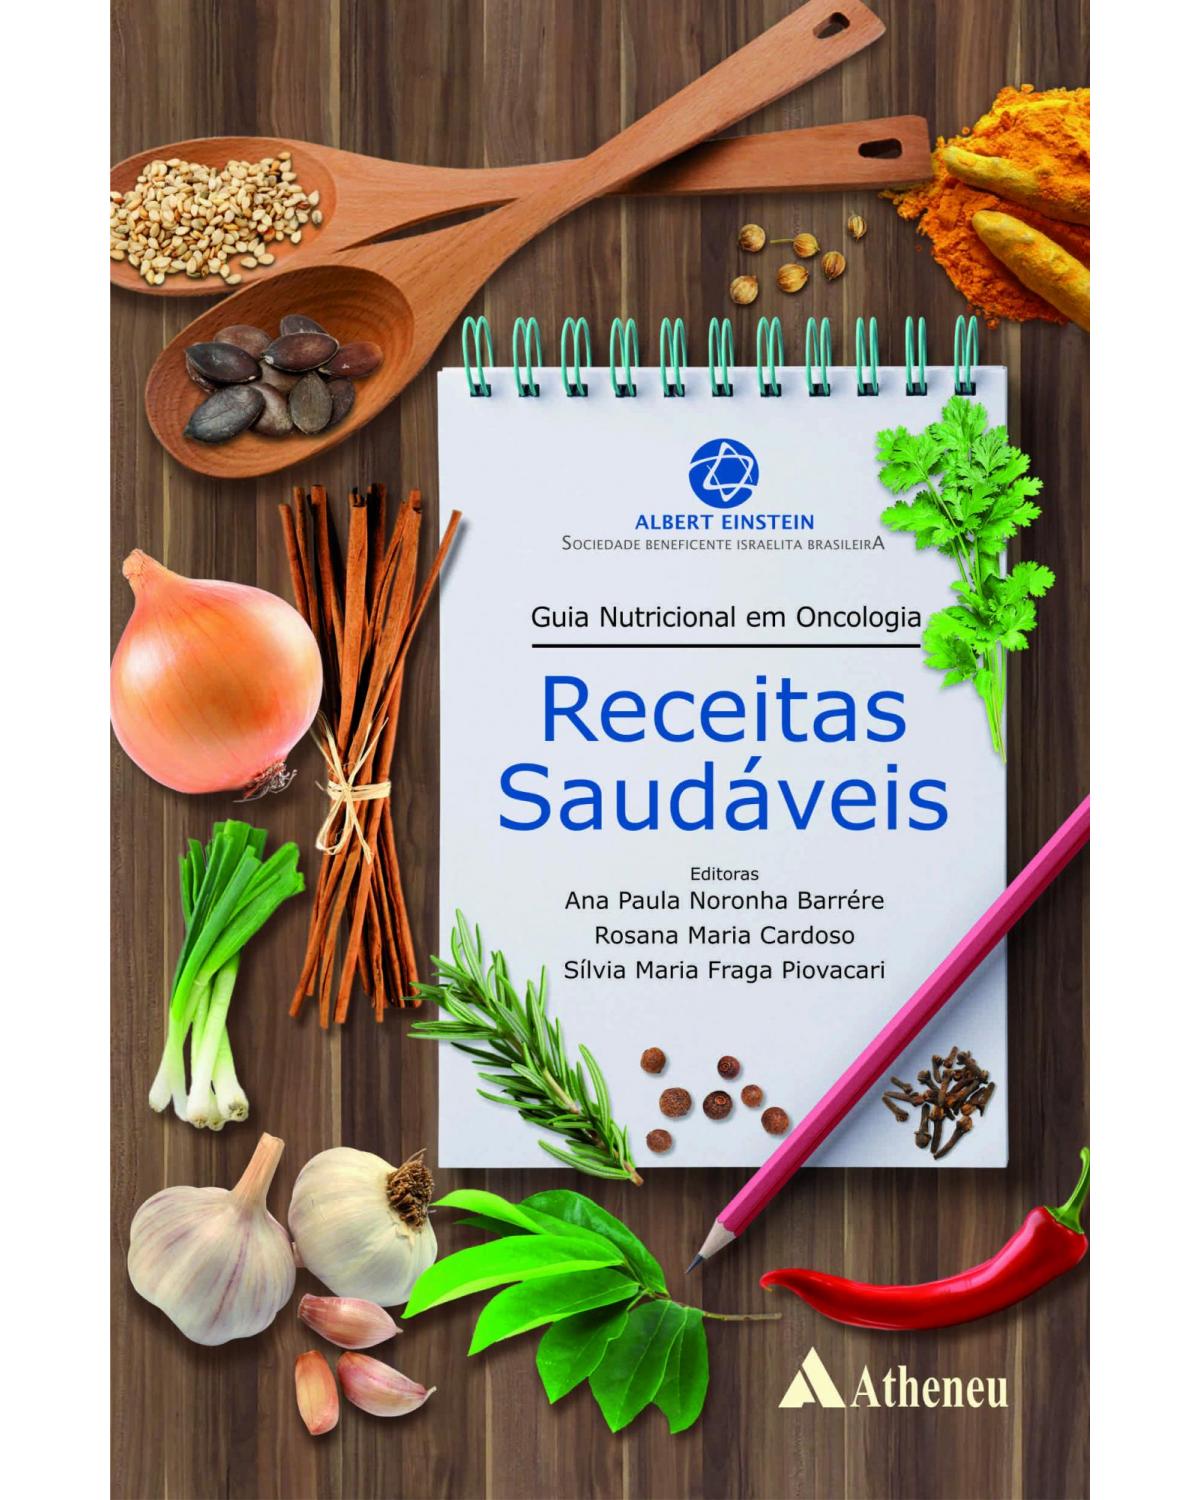 Guia nutricional em oncologia - Receitas saudáveis - 1ª Edição | 2017